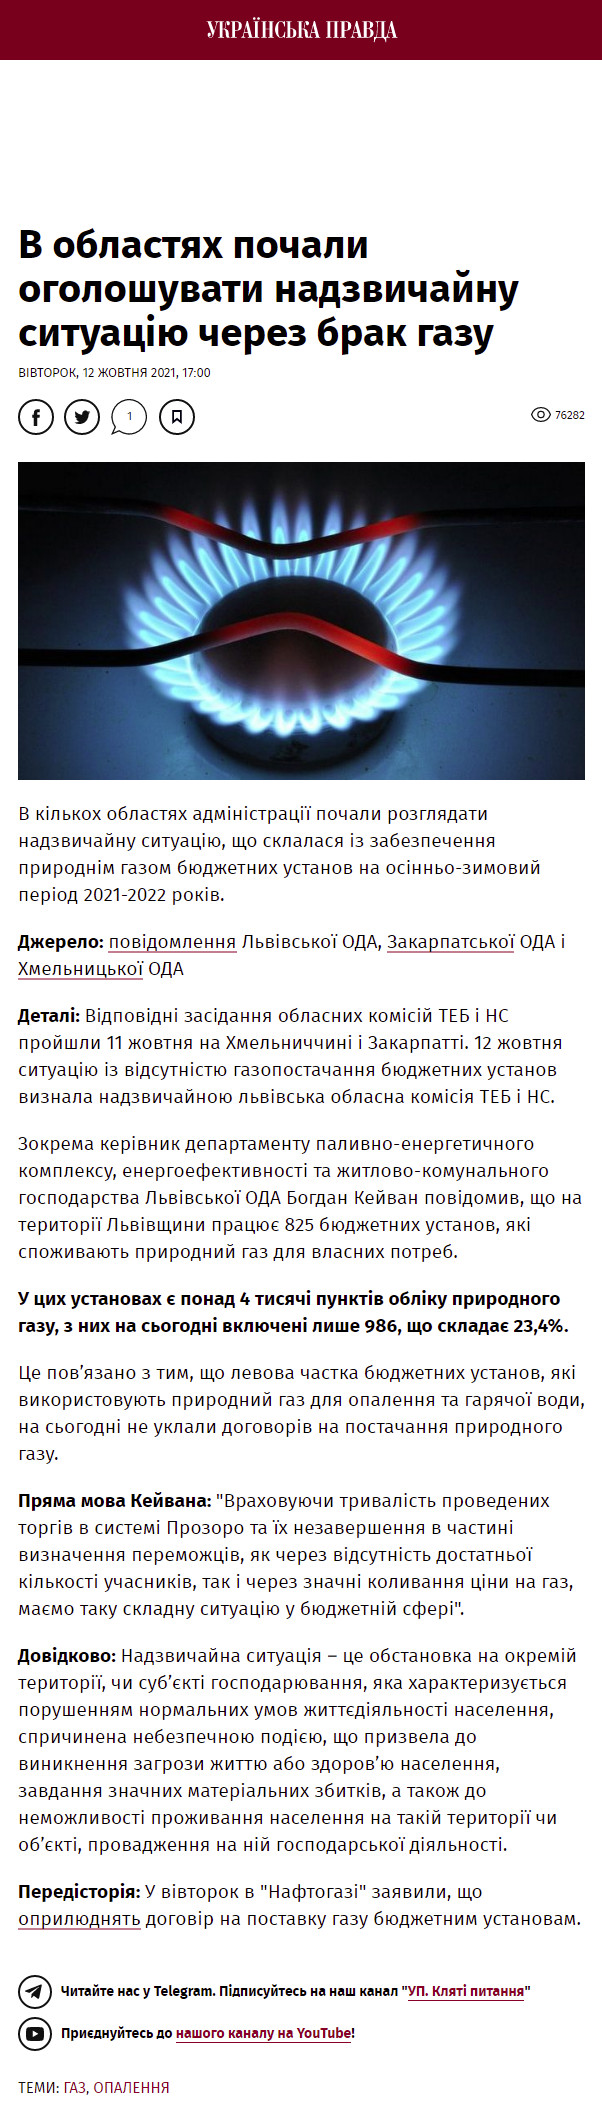 https://www.pravda.com.ua/news/2021/10/12/7310258/